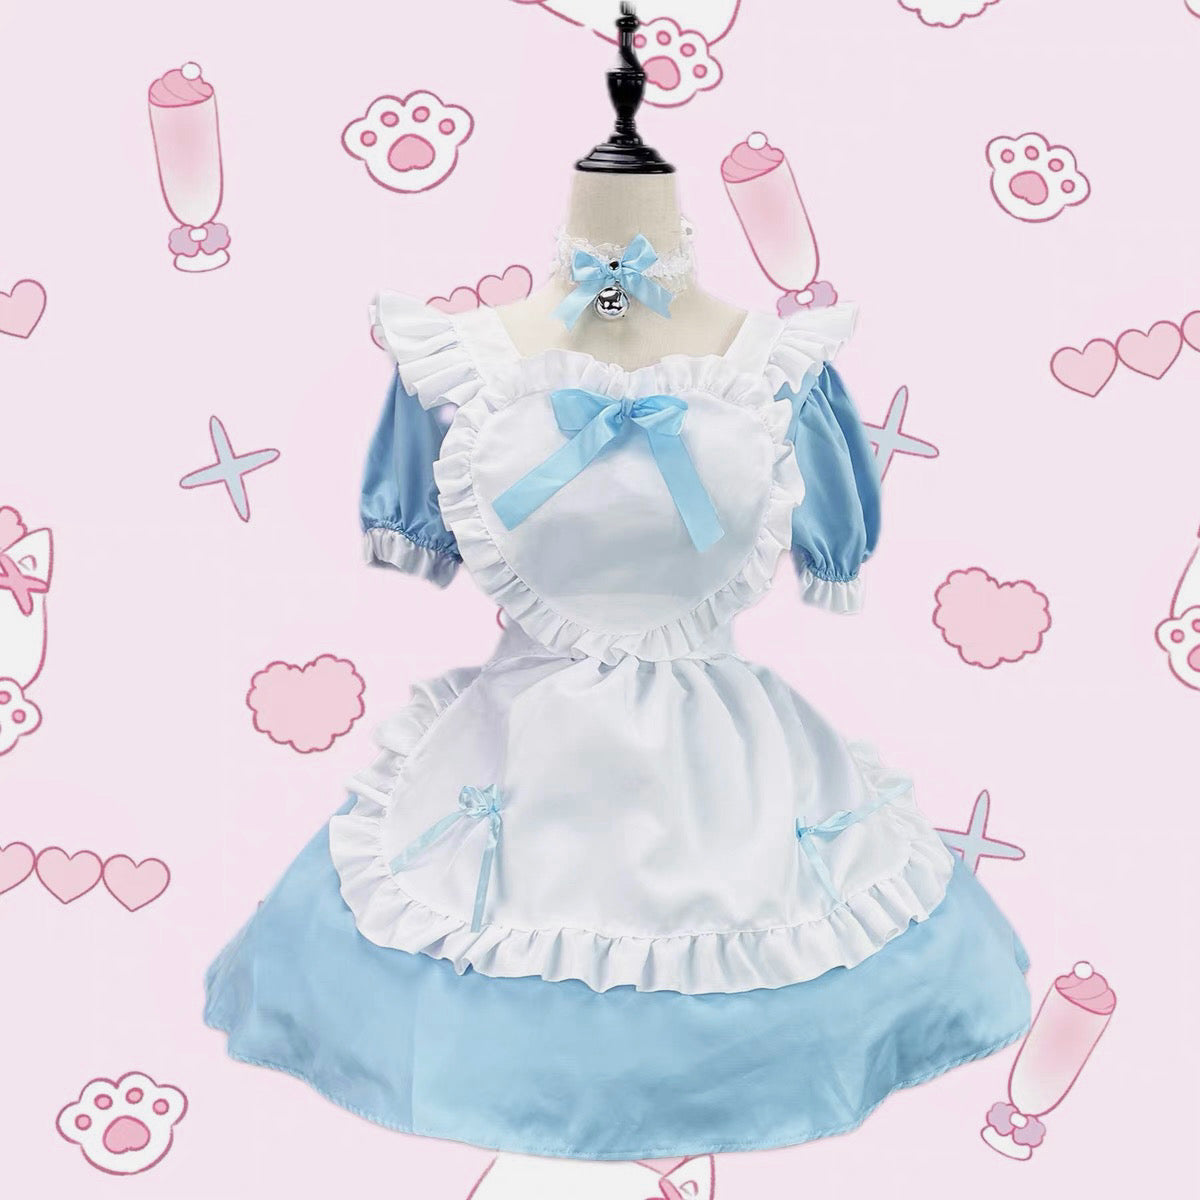 ♡ Alice ♡ - Set di vestiti per bambole